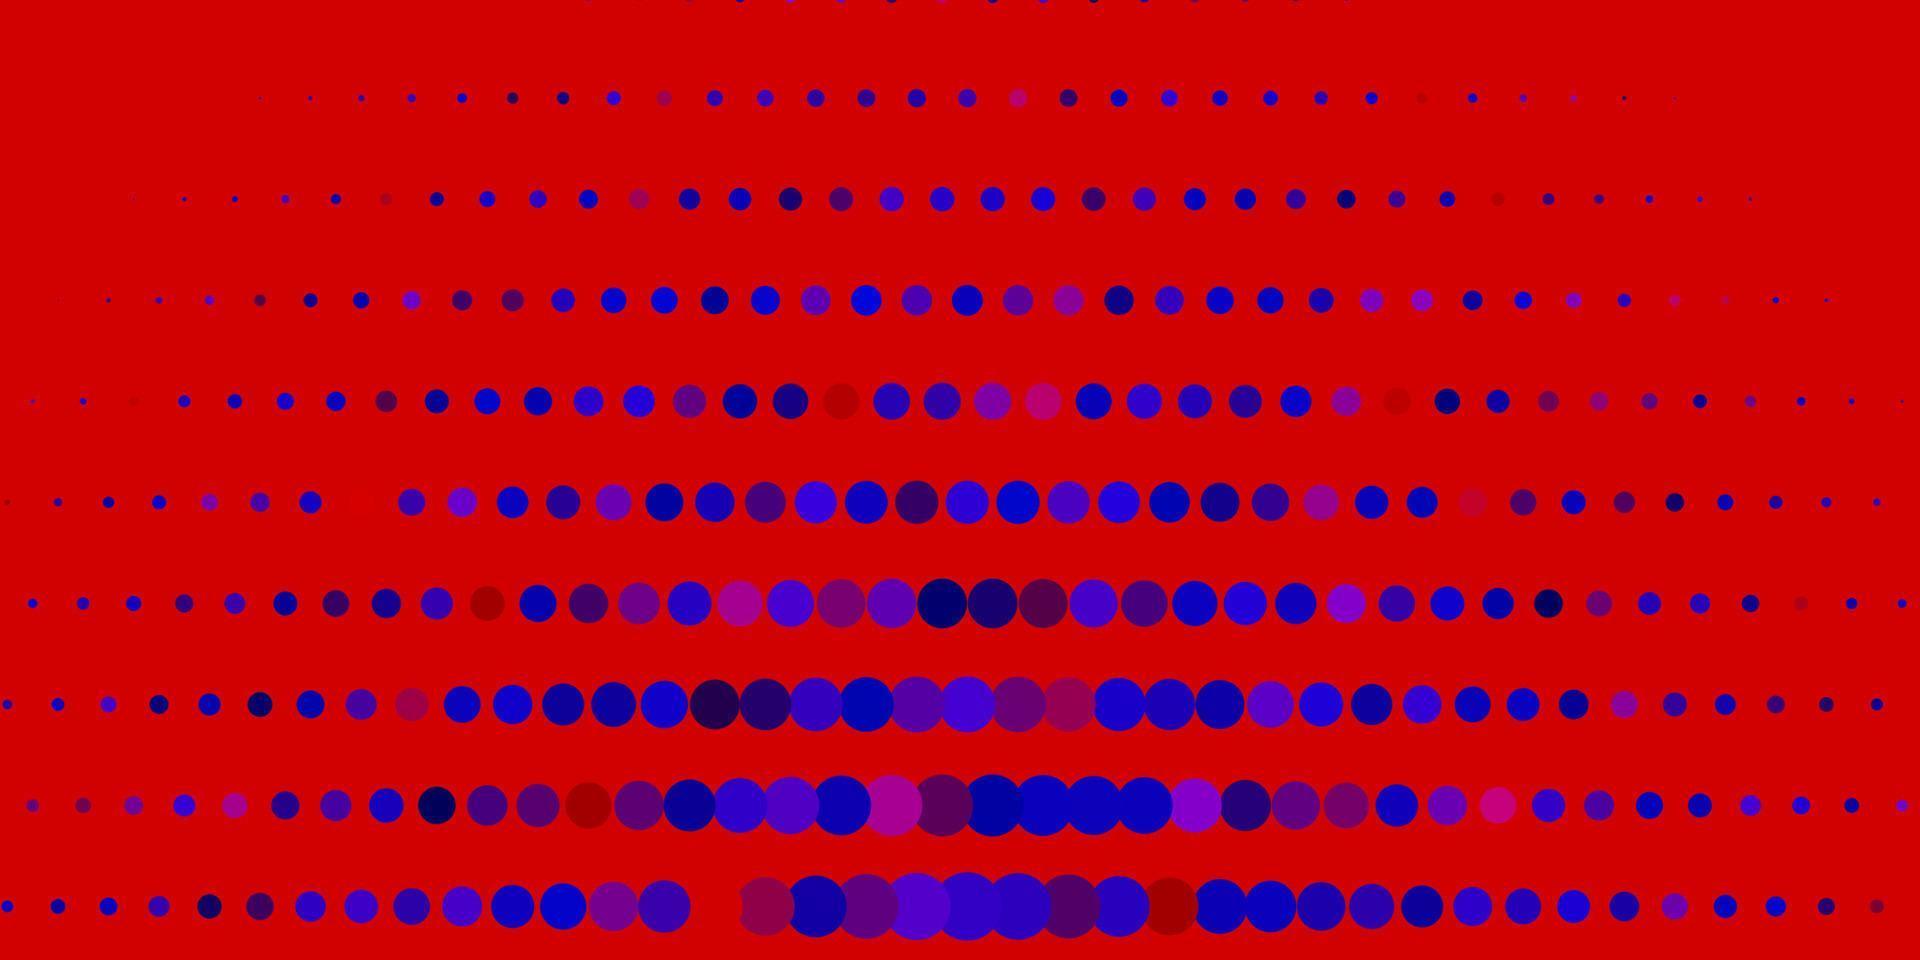 layout de vetor azul escuro e vermelho com formas de círculo.